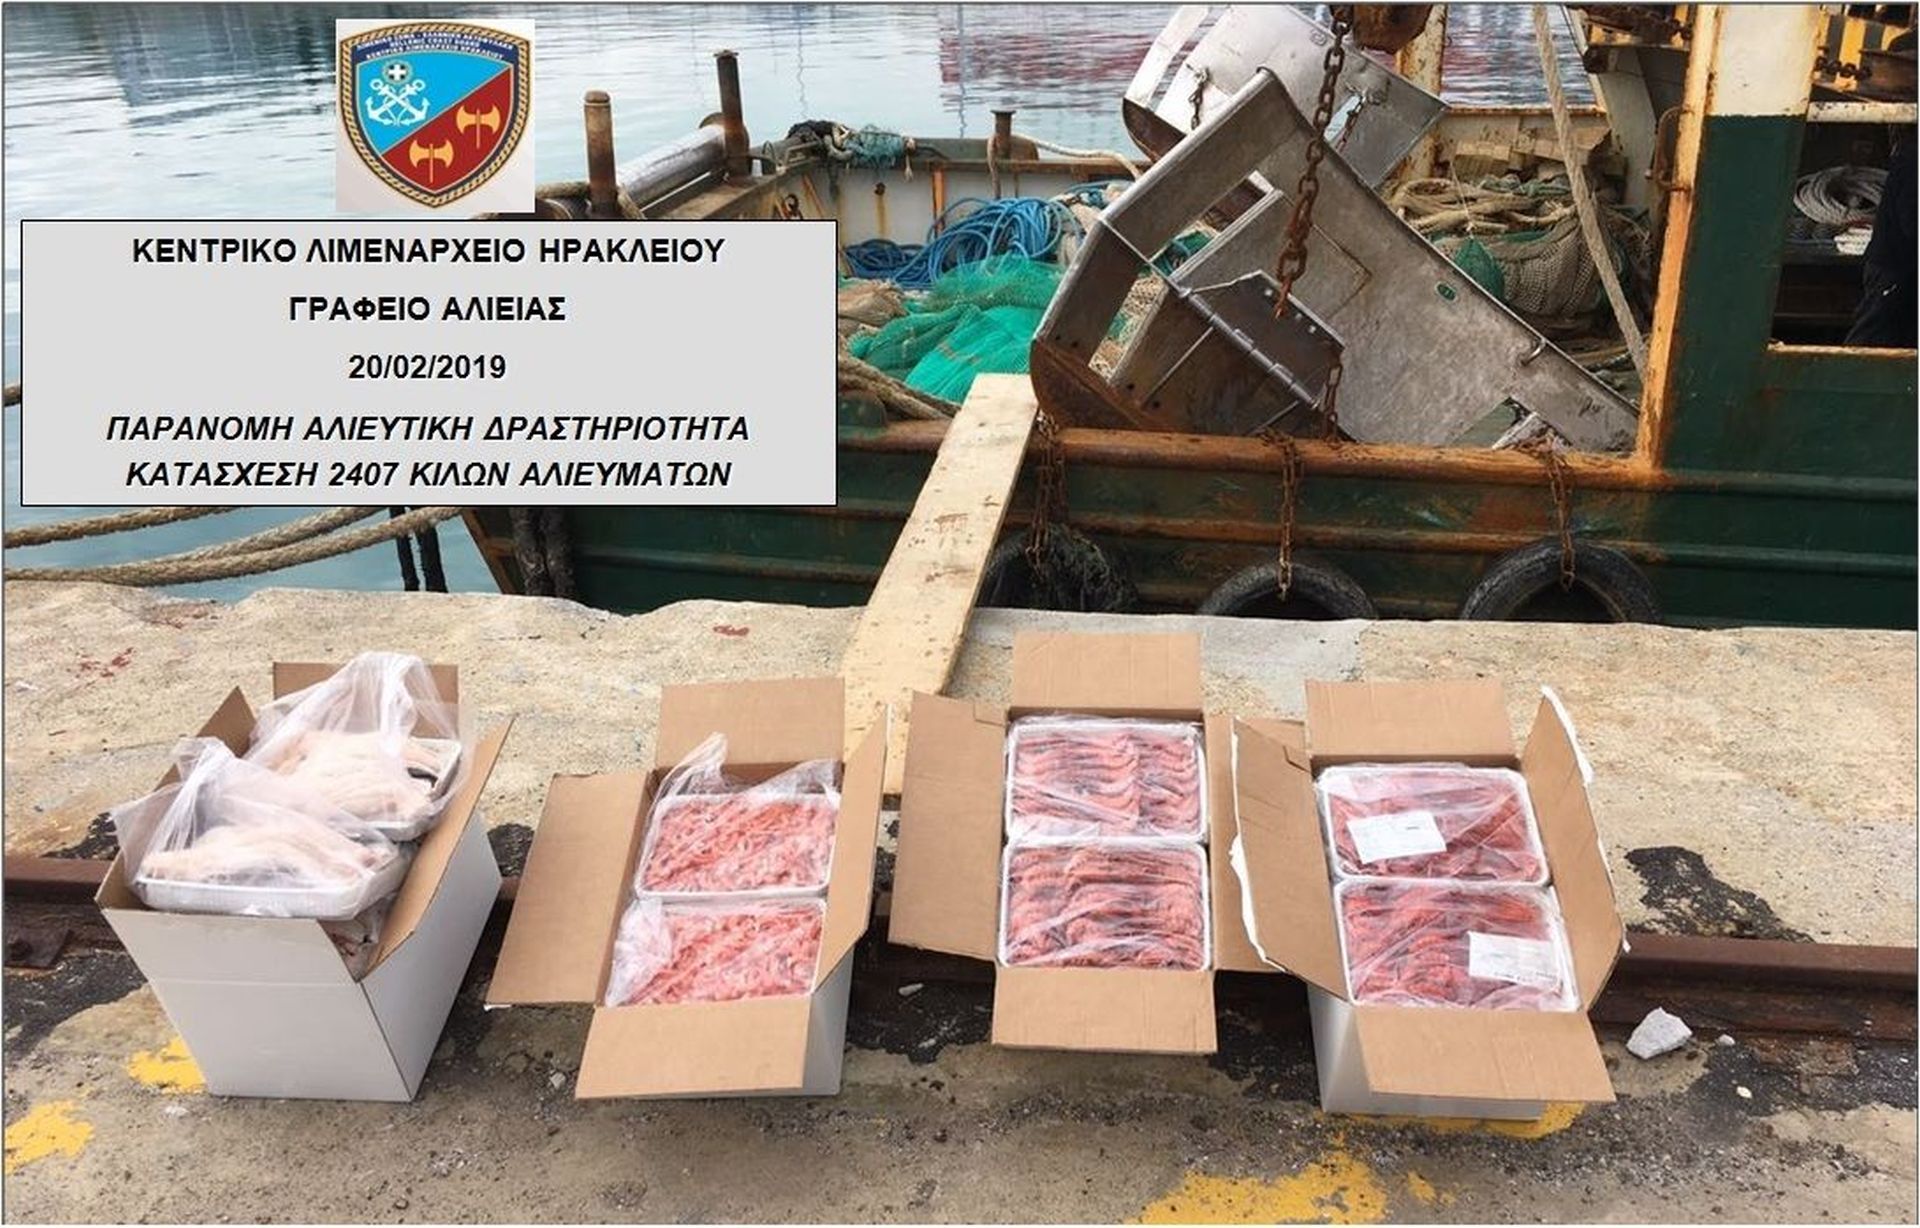 Επέβαλαν κυρώσεις και κατέσχεσαν εκατοντάδες κιλά ψάρια σε επαγγελματία αλιέα στο Ηράκλειο